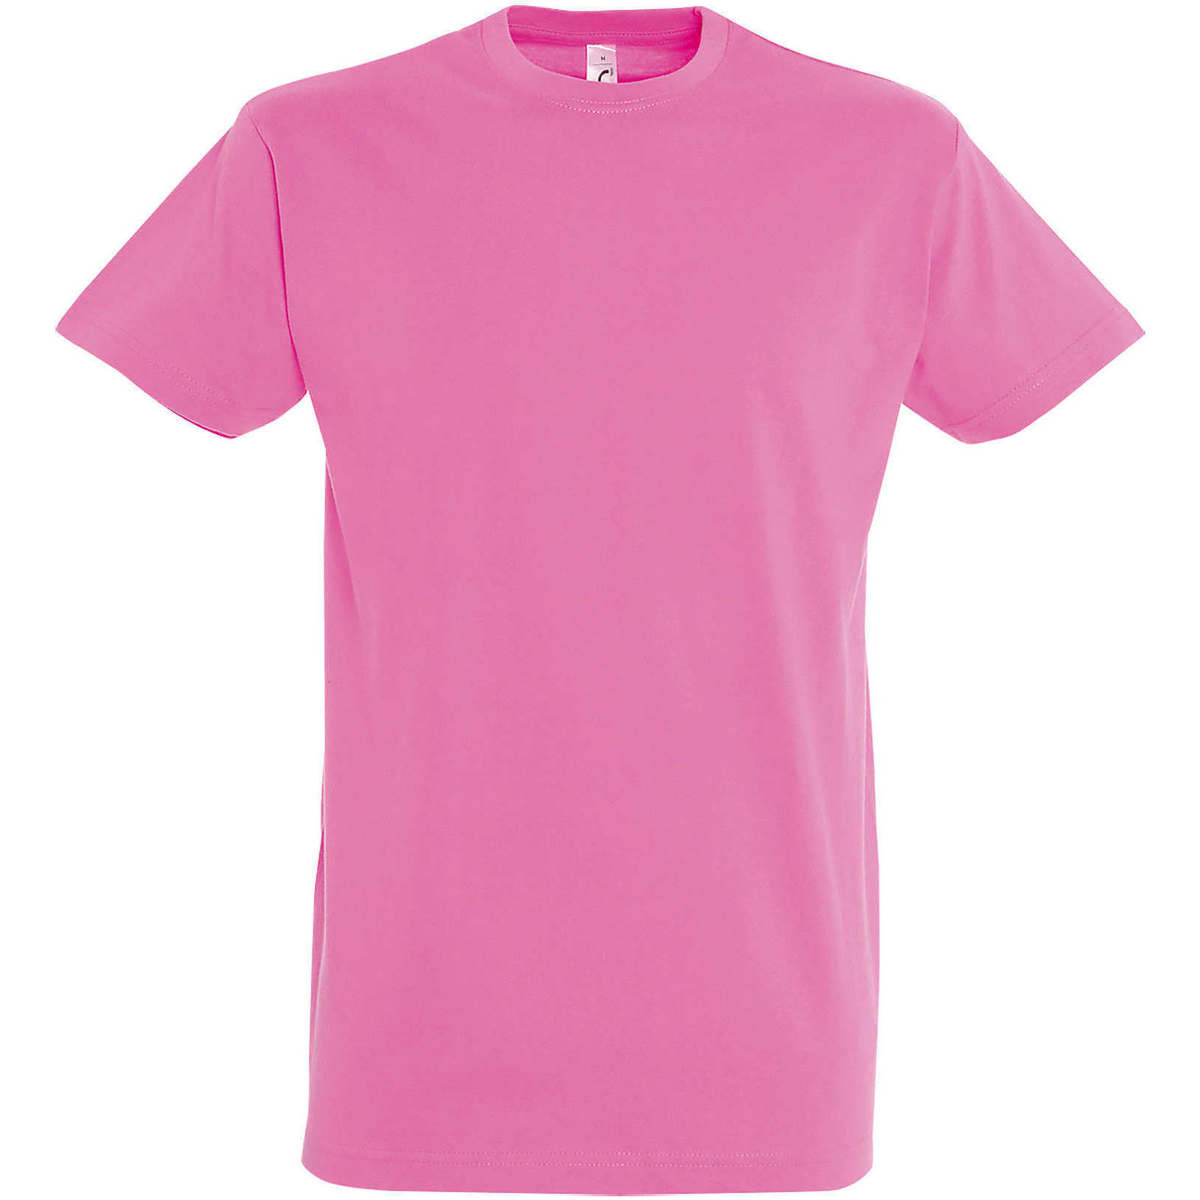 Oblačila Ženske Majice s kratkimi rokavi Sols IMPERIAL camiseta color Rosa Orquidea Rožnata